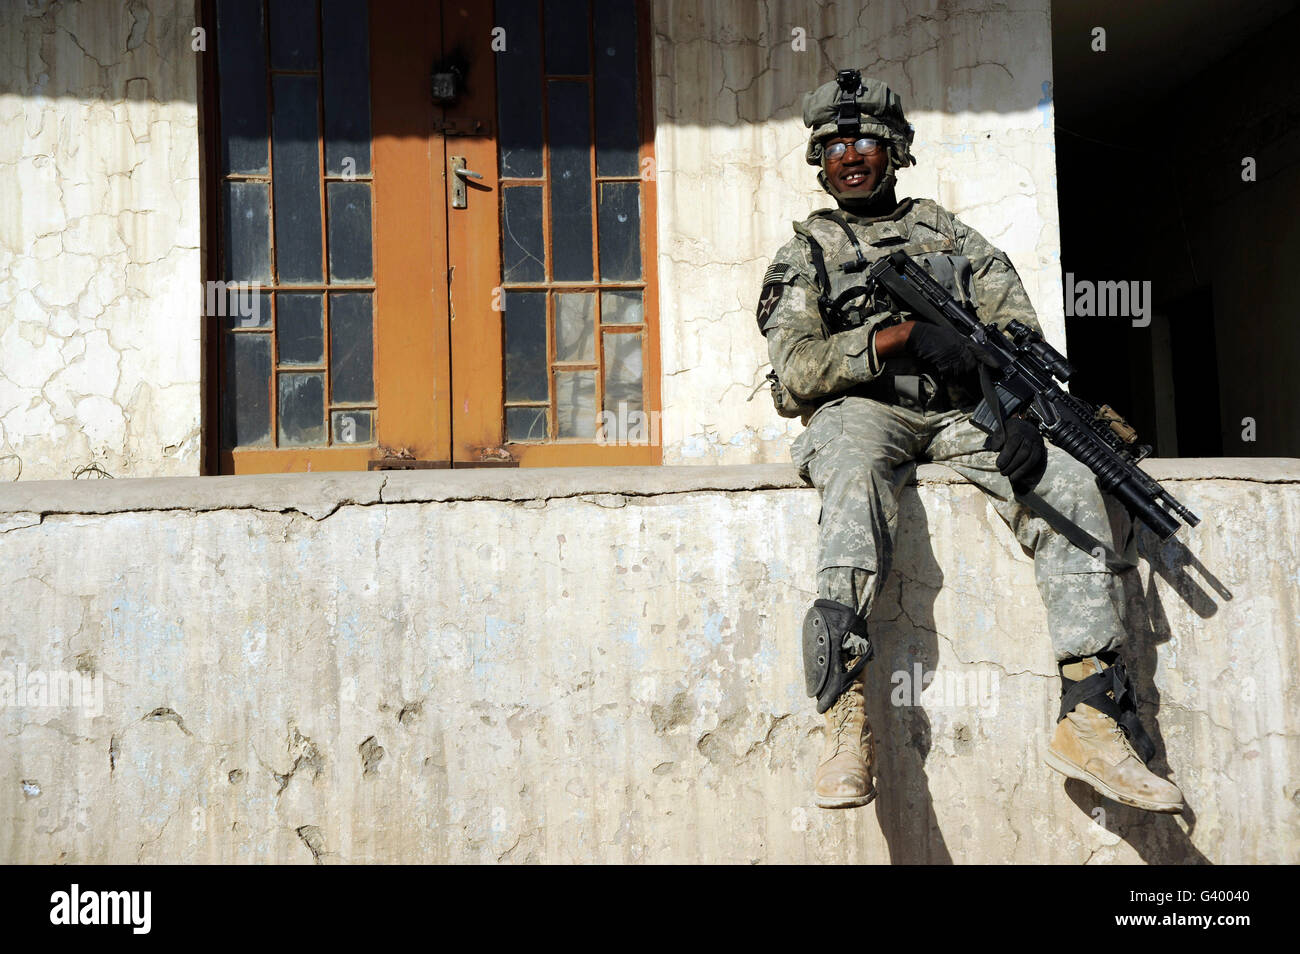 Soldat de l'armée américaine en visite dans un avant poste de la Police nationale irakienne à Mossoul, en Irak. Banque D'Images